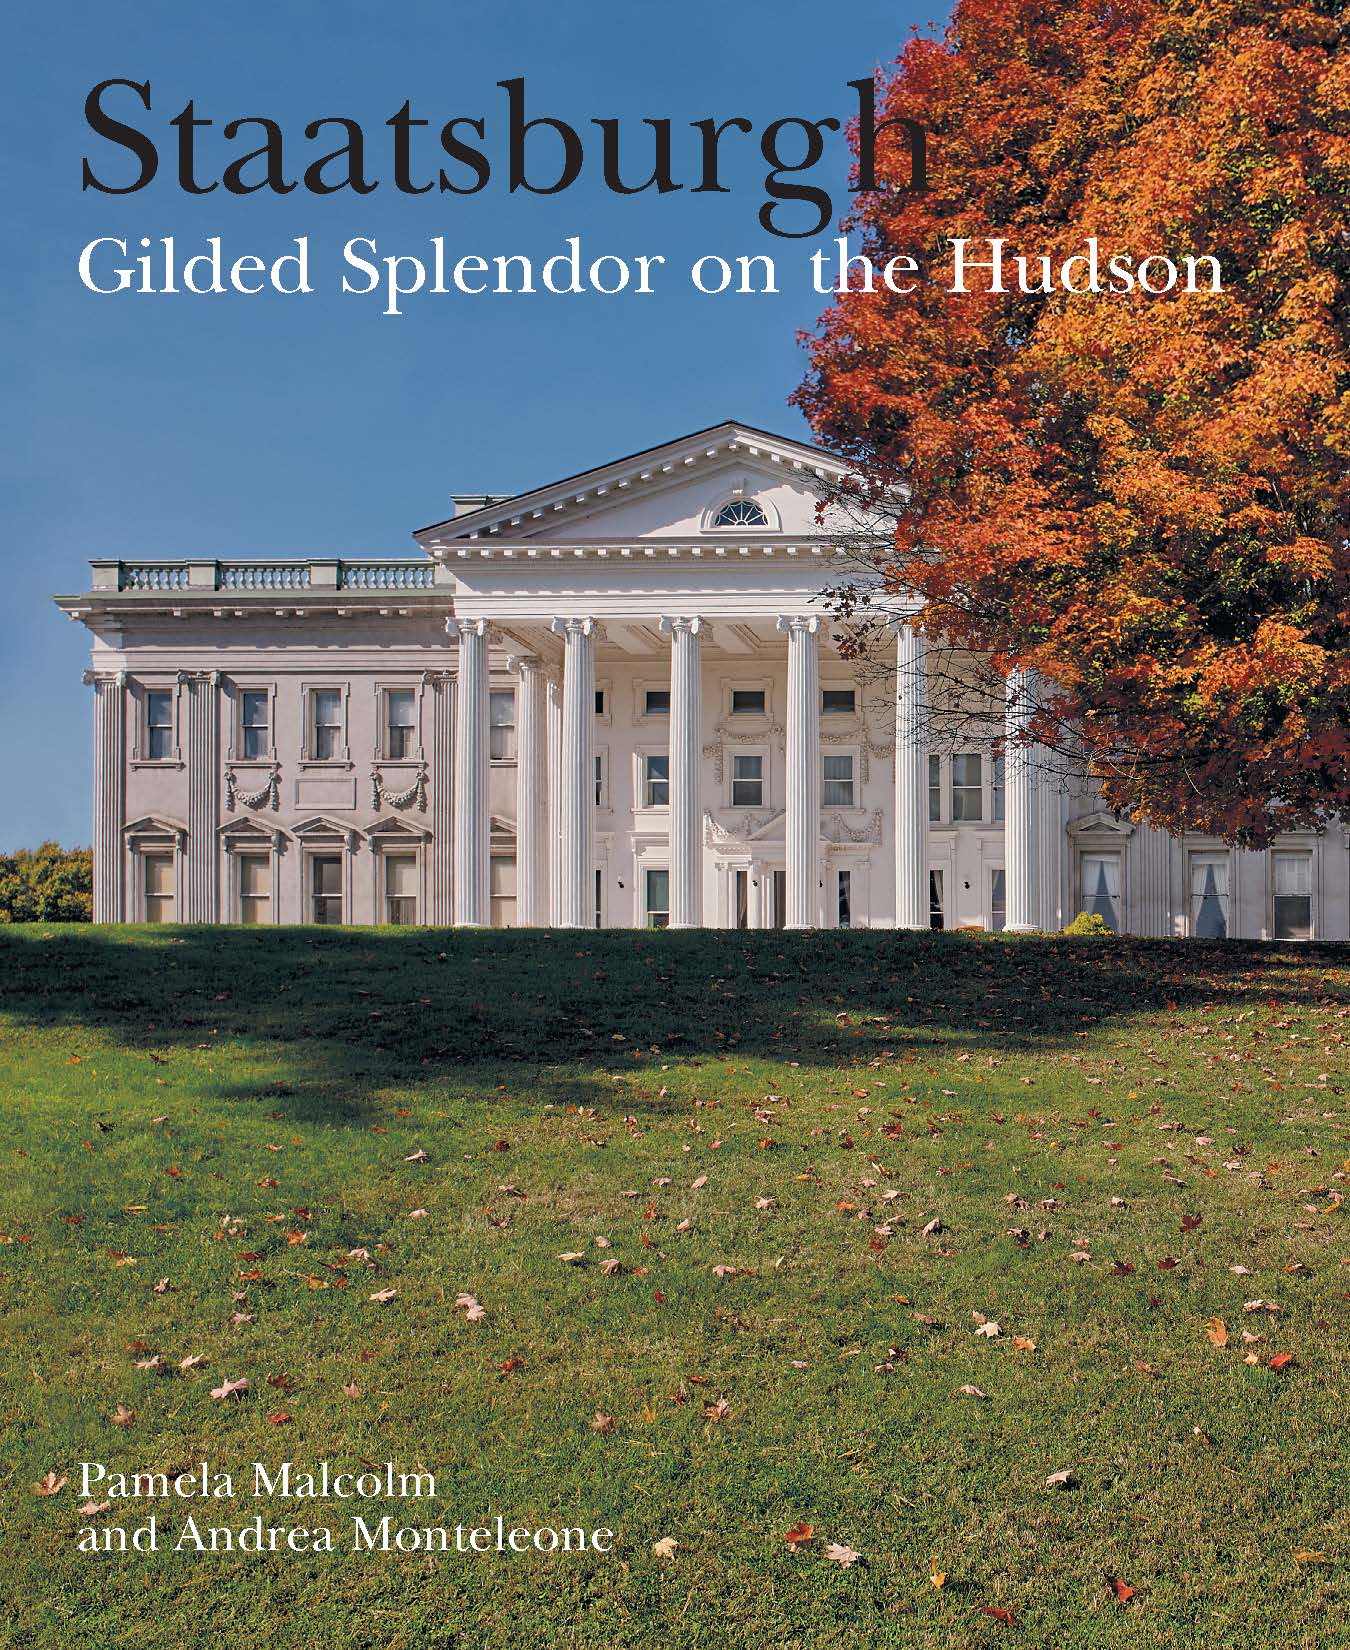 Staatsburgh: Gilded Splendor on the Hudson